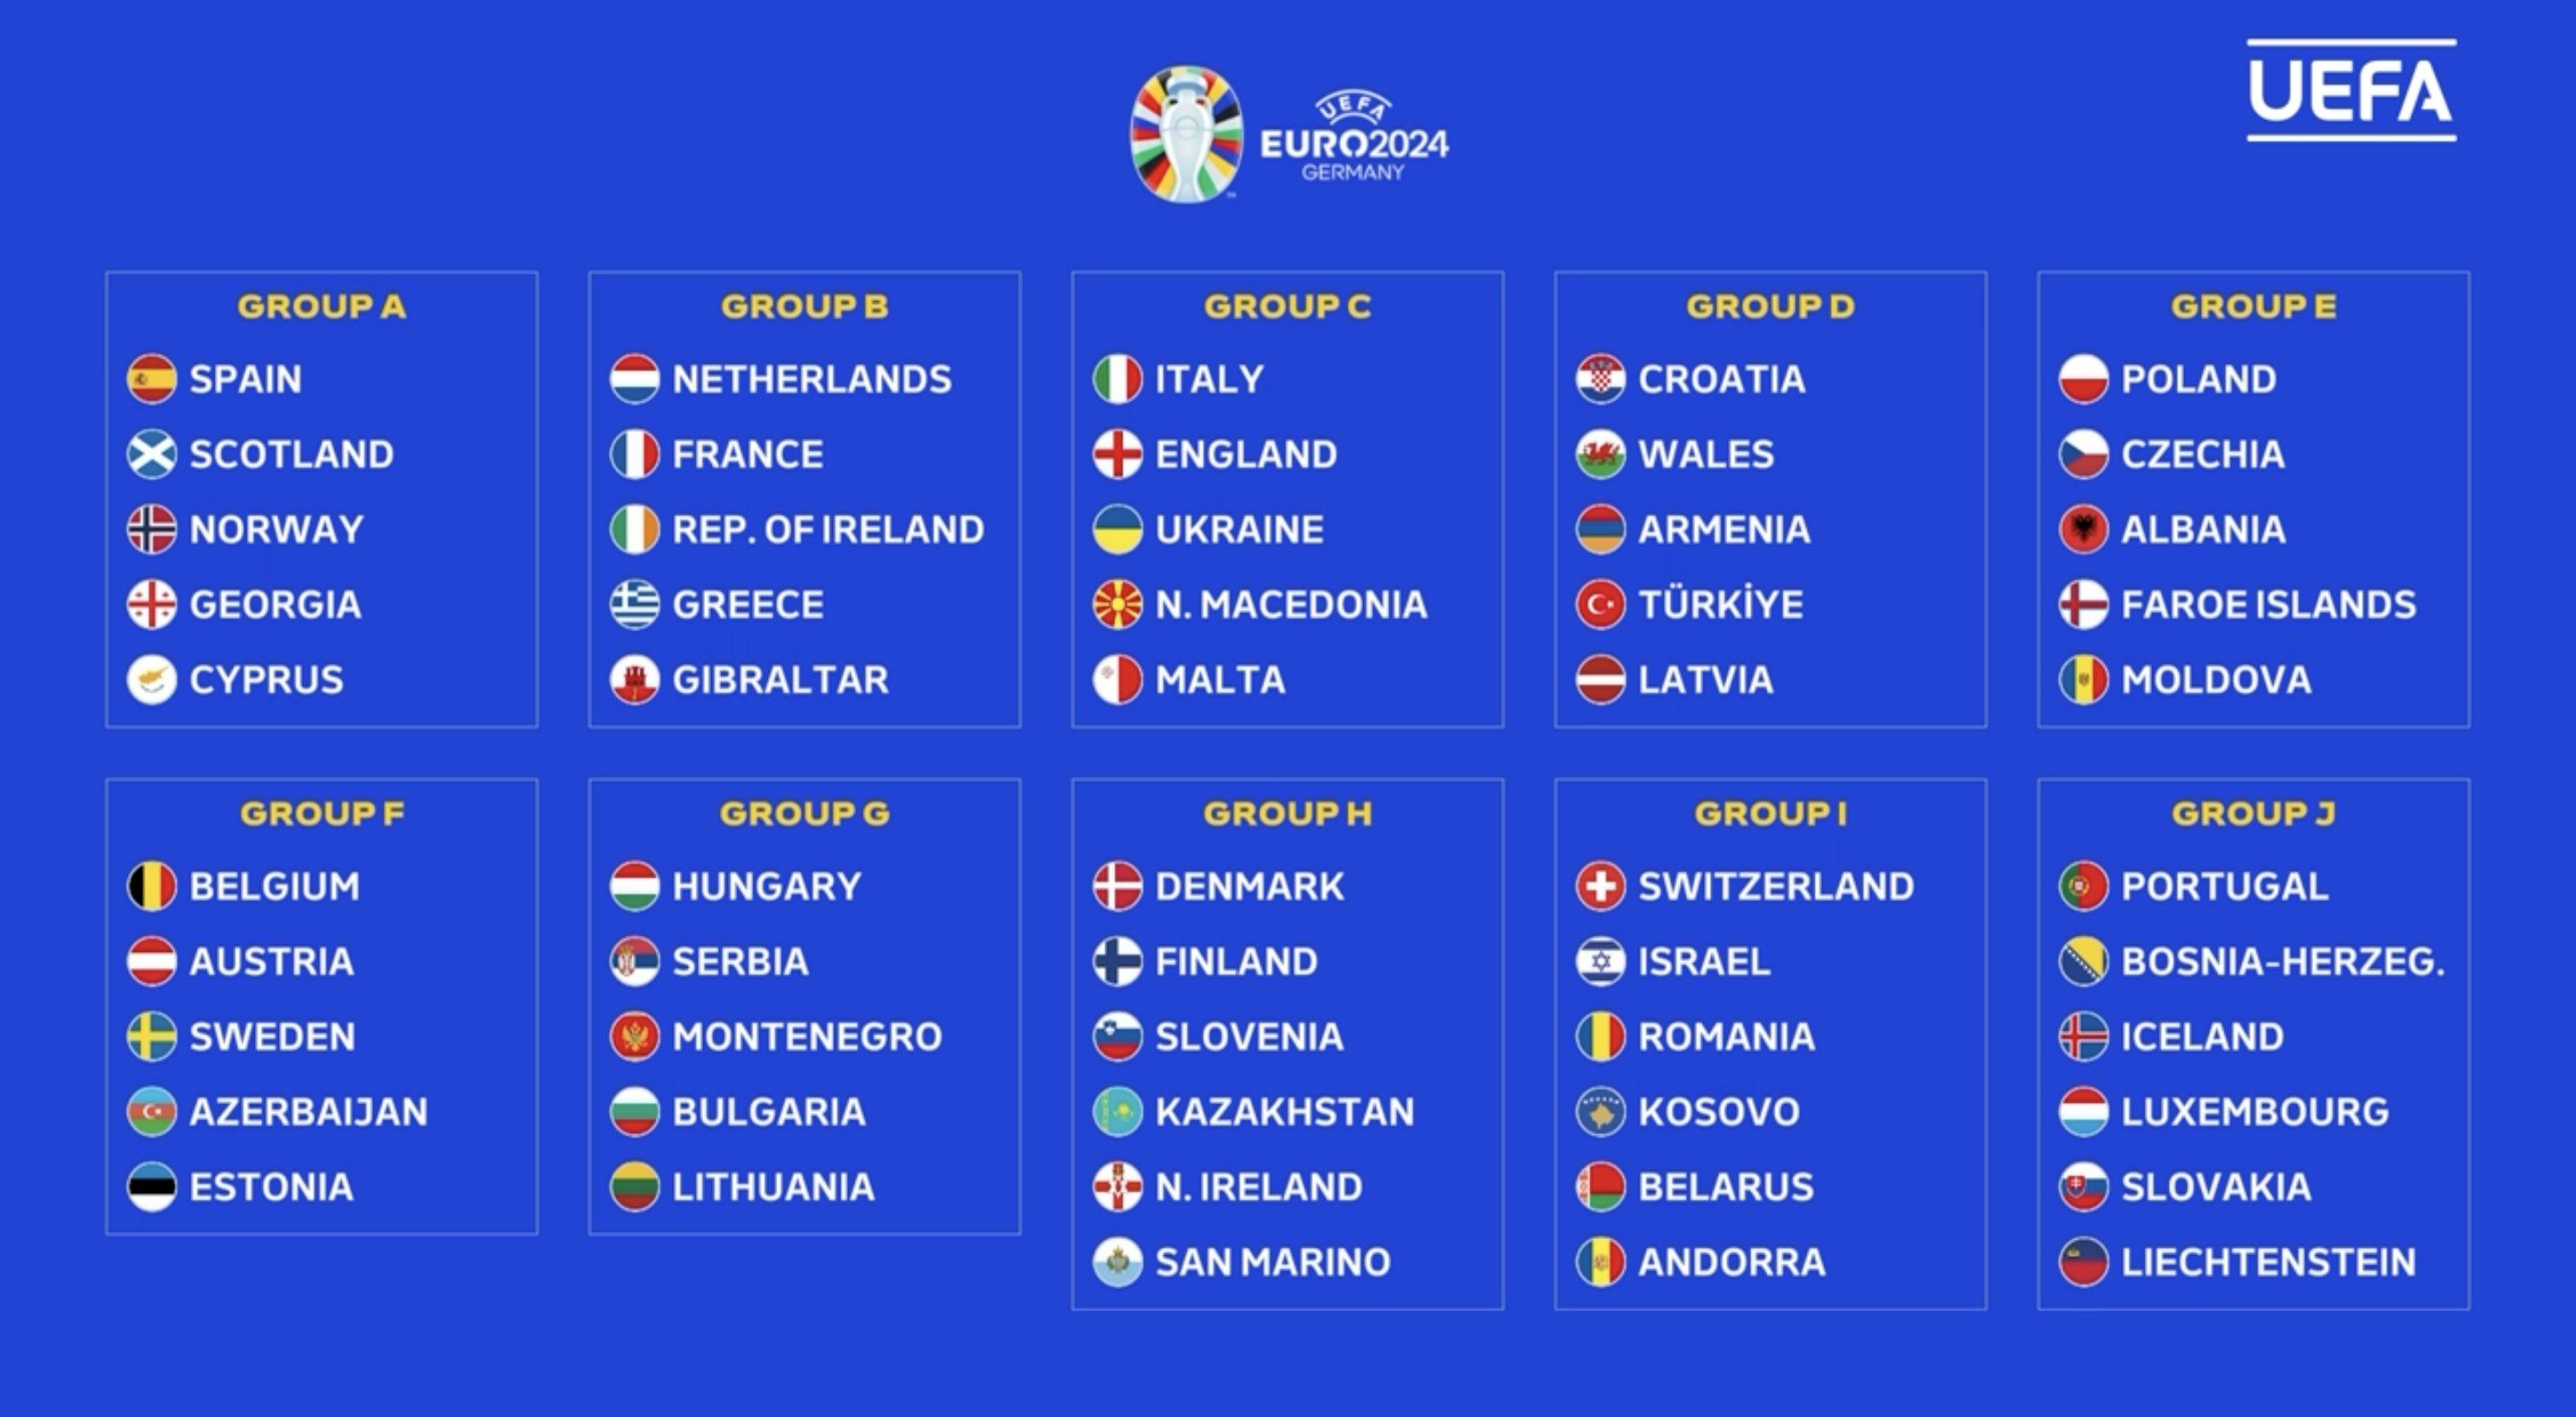 Jadwal kualifikasi EURO 2024 tanggal 23-29 Maret 2023. Ini hasil drawing grup dan link live streaming Piala Eropa.